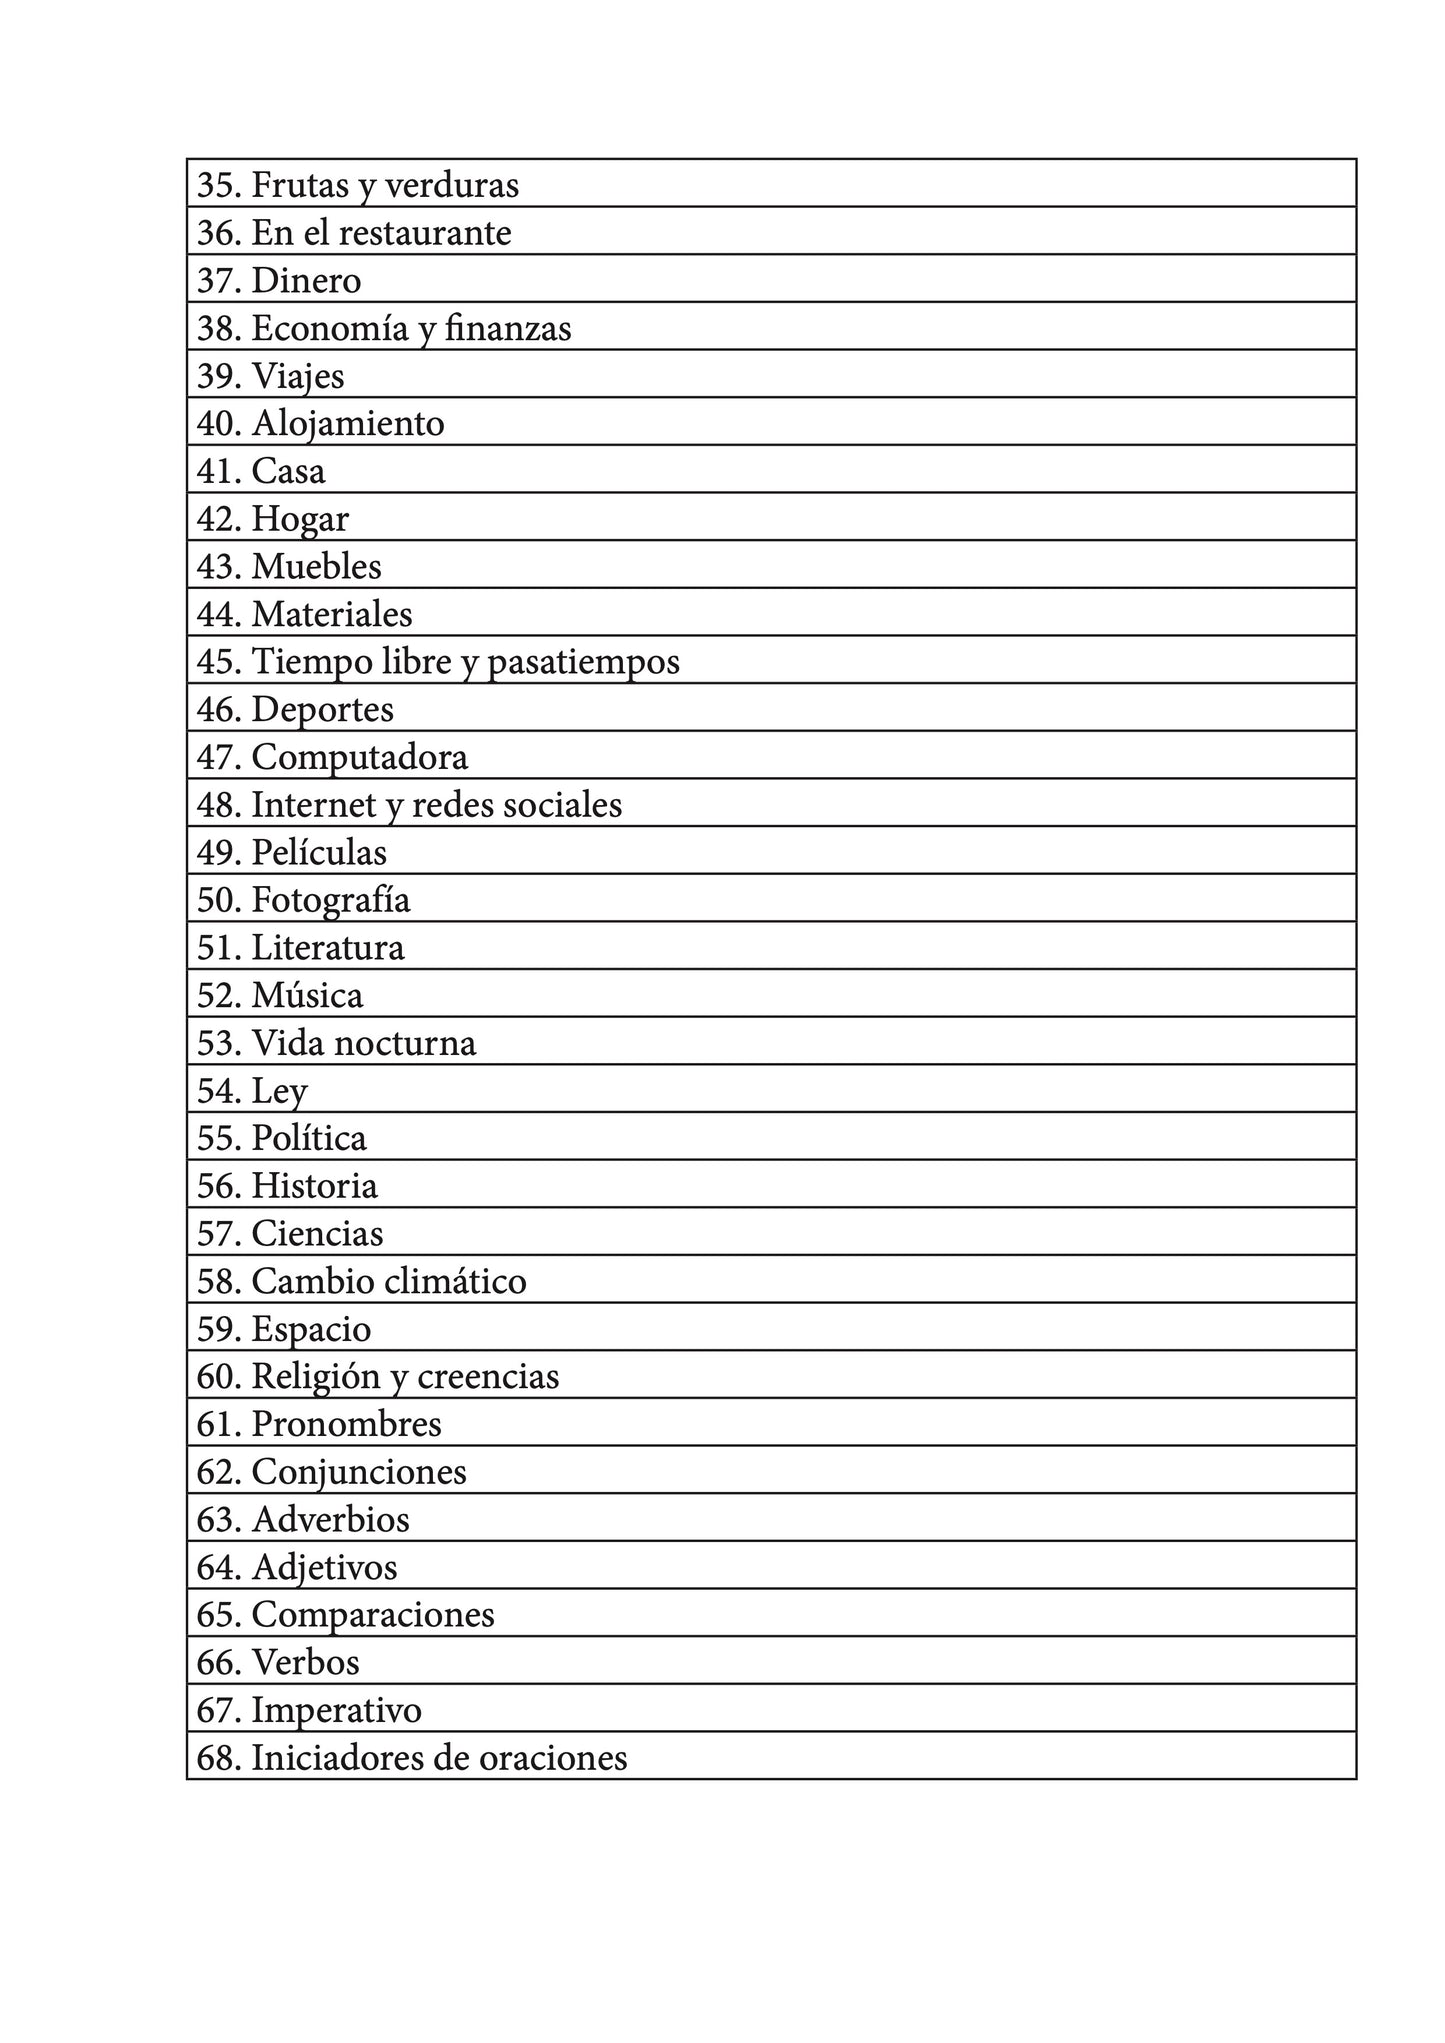 Español-letón cuaderno de vocabulario